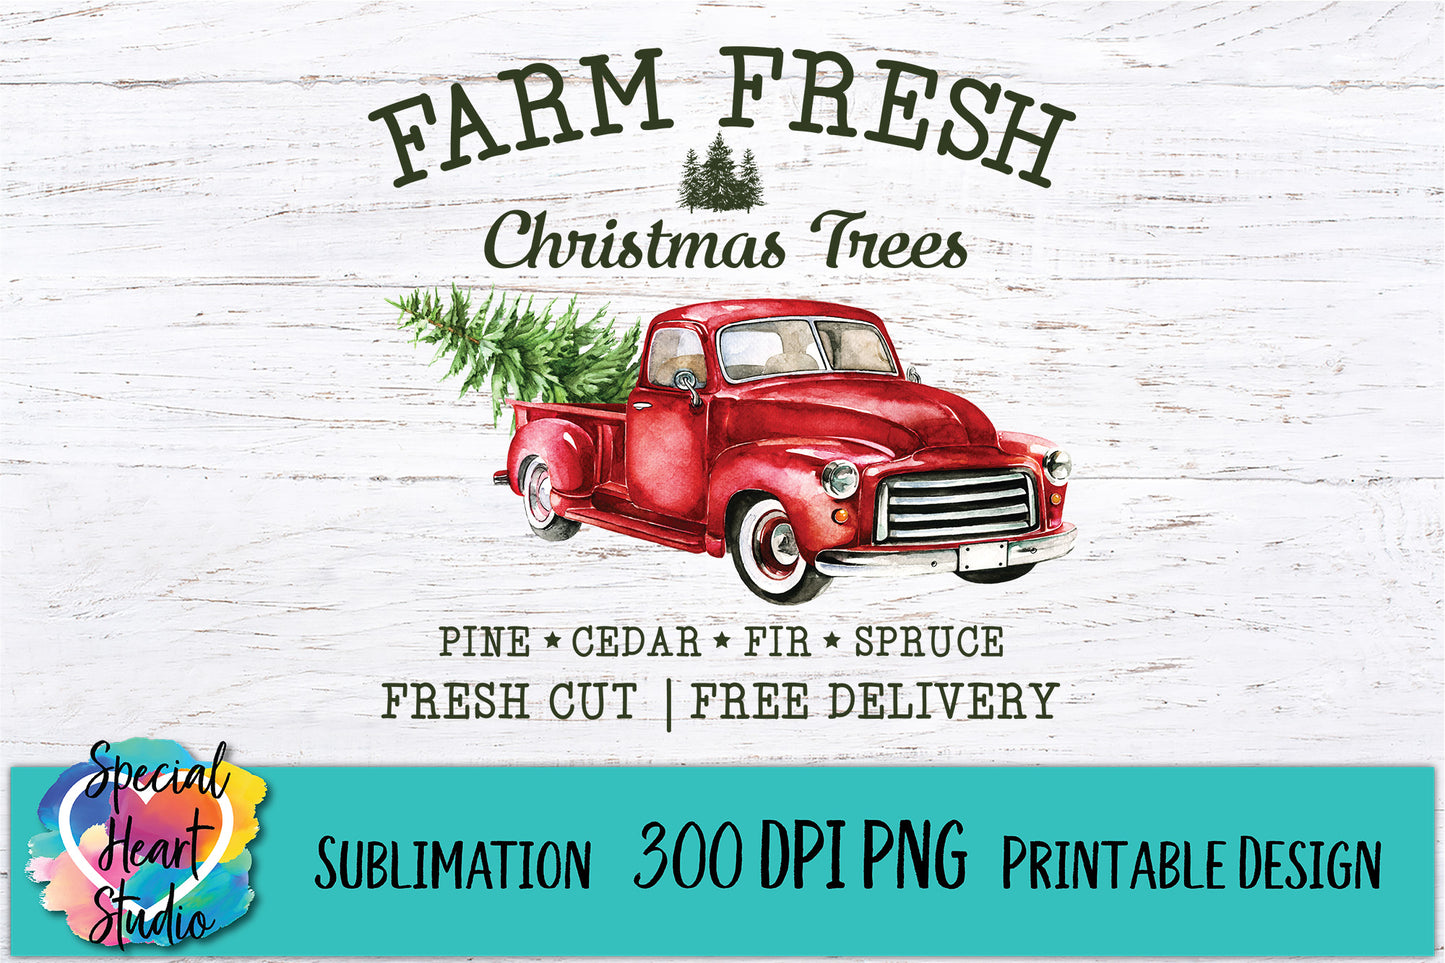 Farm Fresh Christmas Trees - Printable